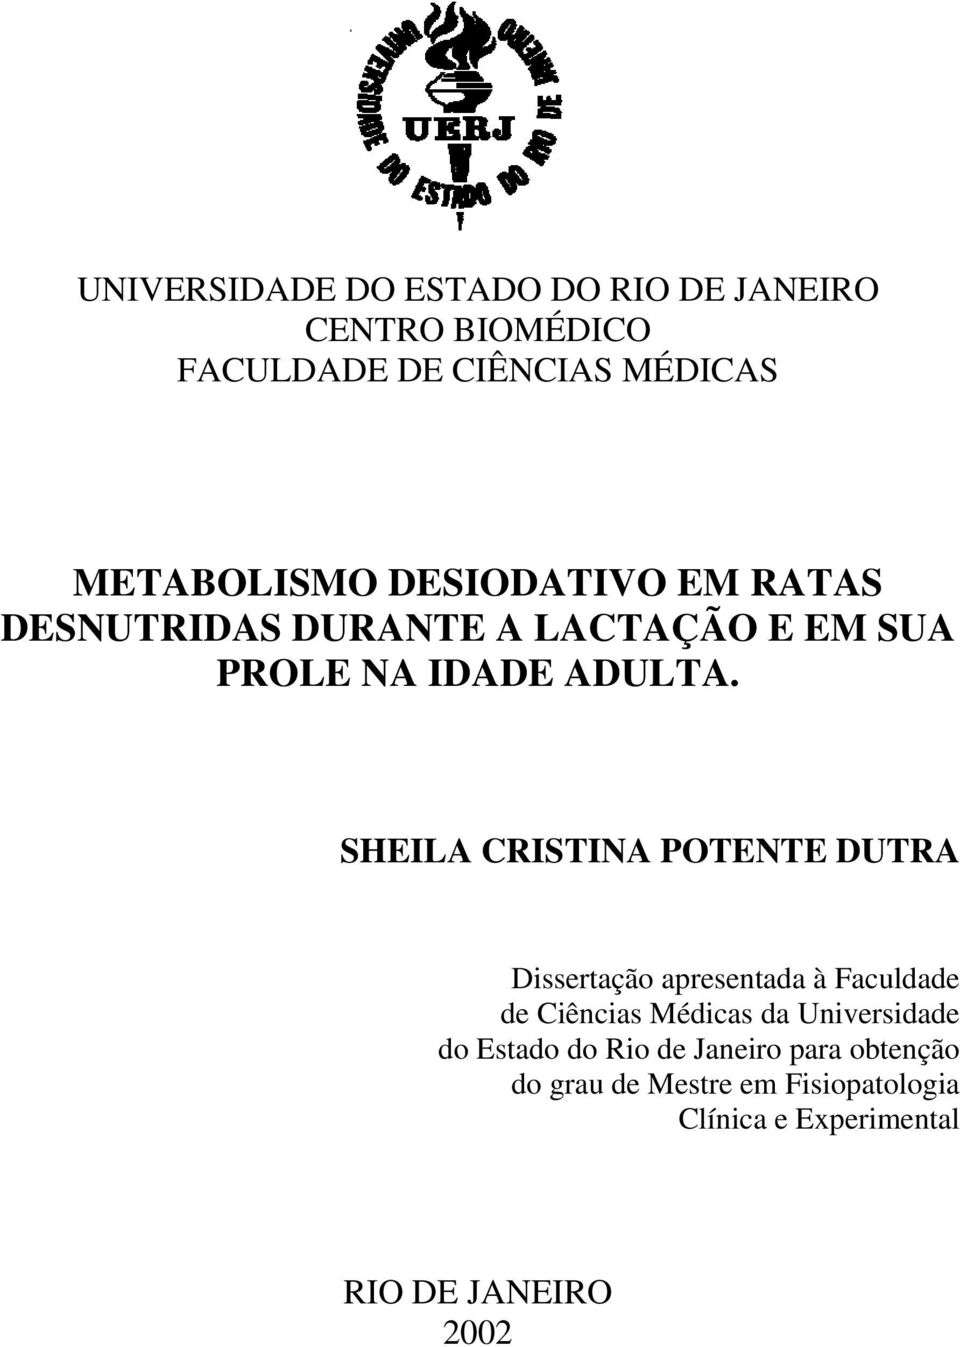 SHEILA CRISTINA POTENTE DUTRA Dissertação apresentada à Faculdade de Ciências Médicas da Universidade